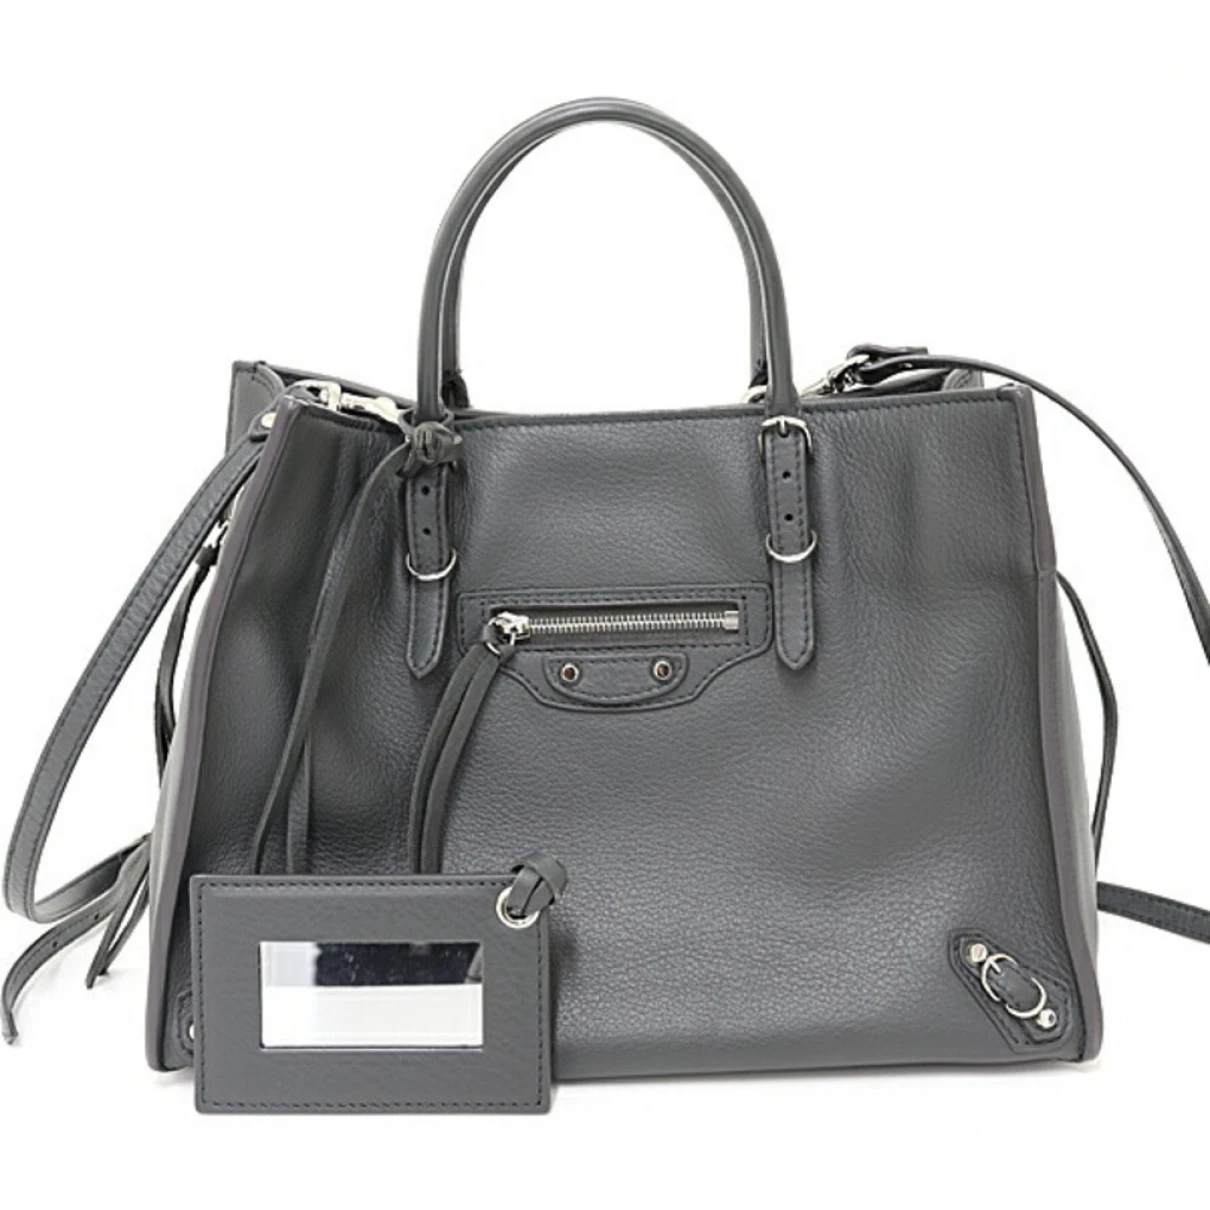 Pre-owned Balenciaga Papier Leather Handbag In Grey